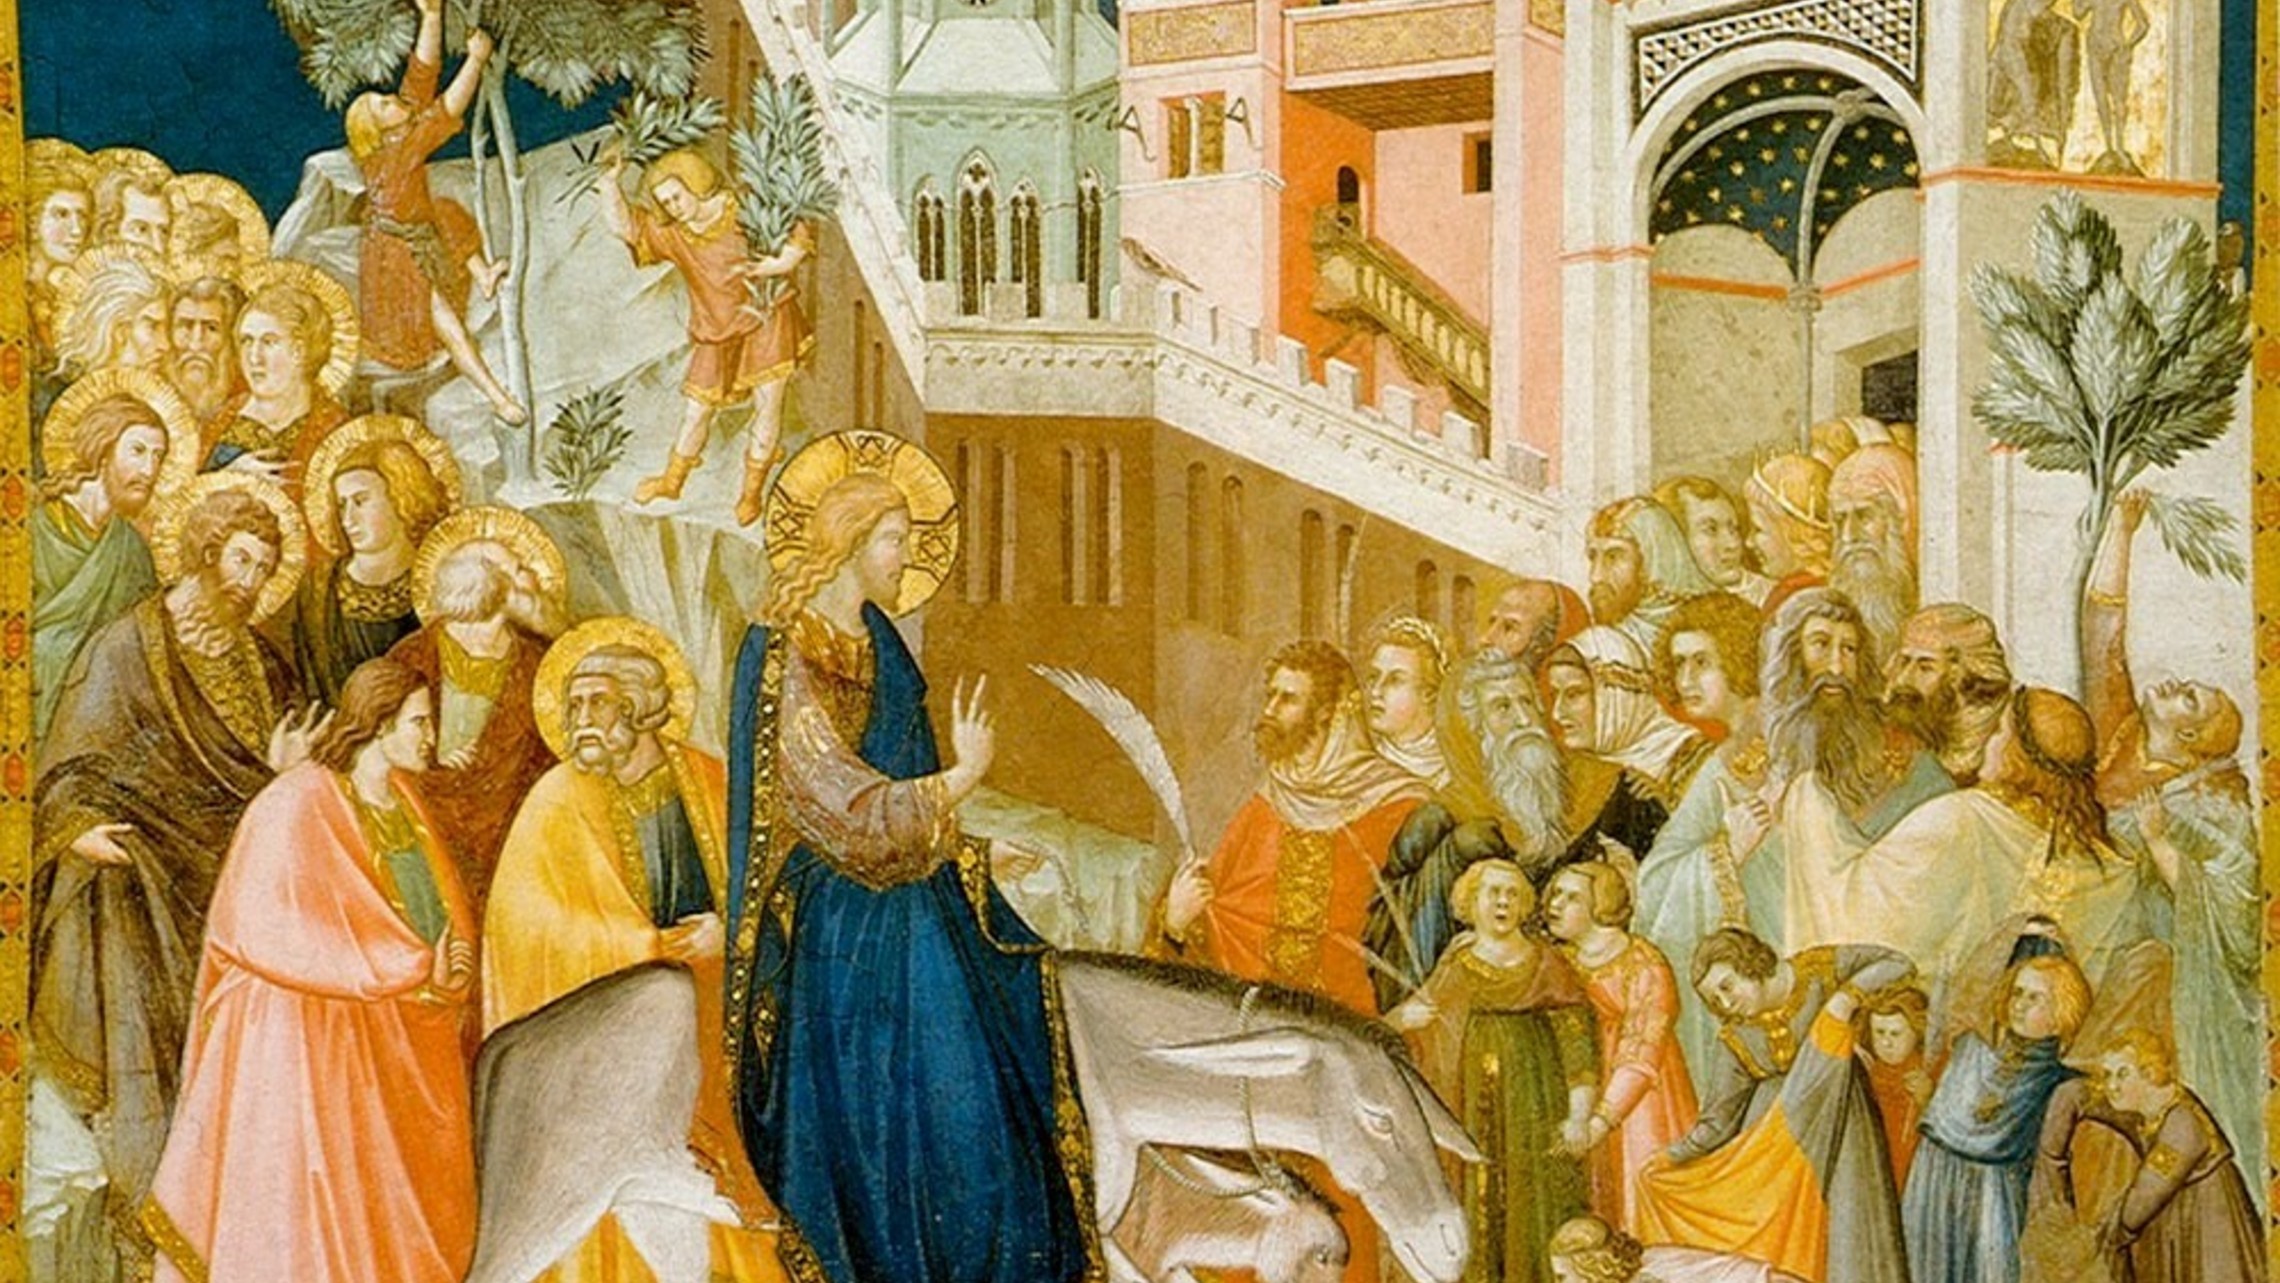 Christ enters Jerusalem